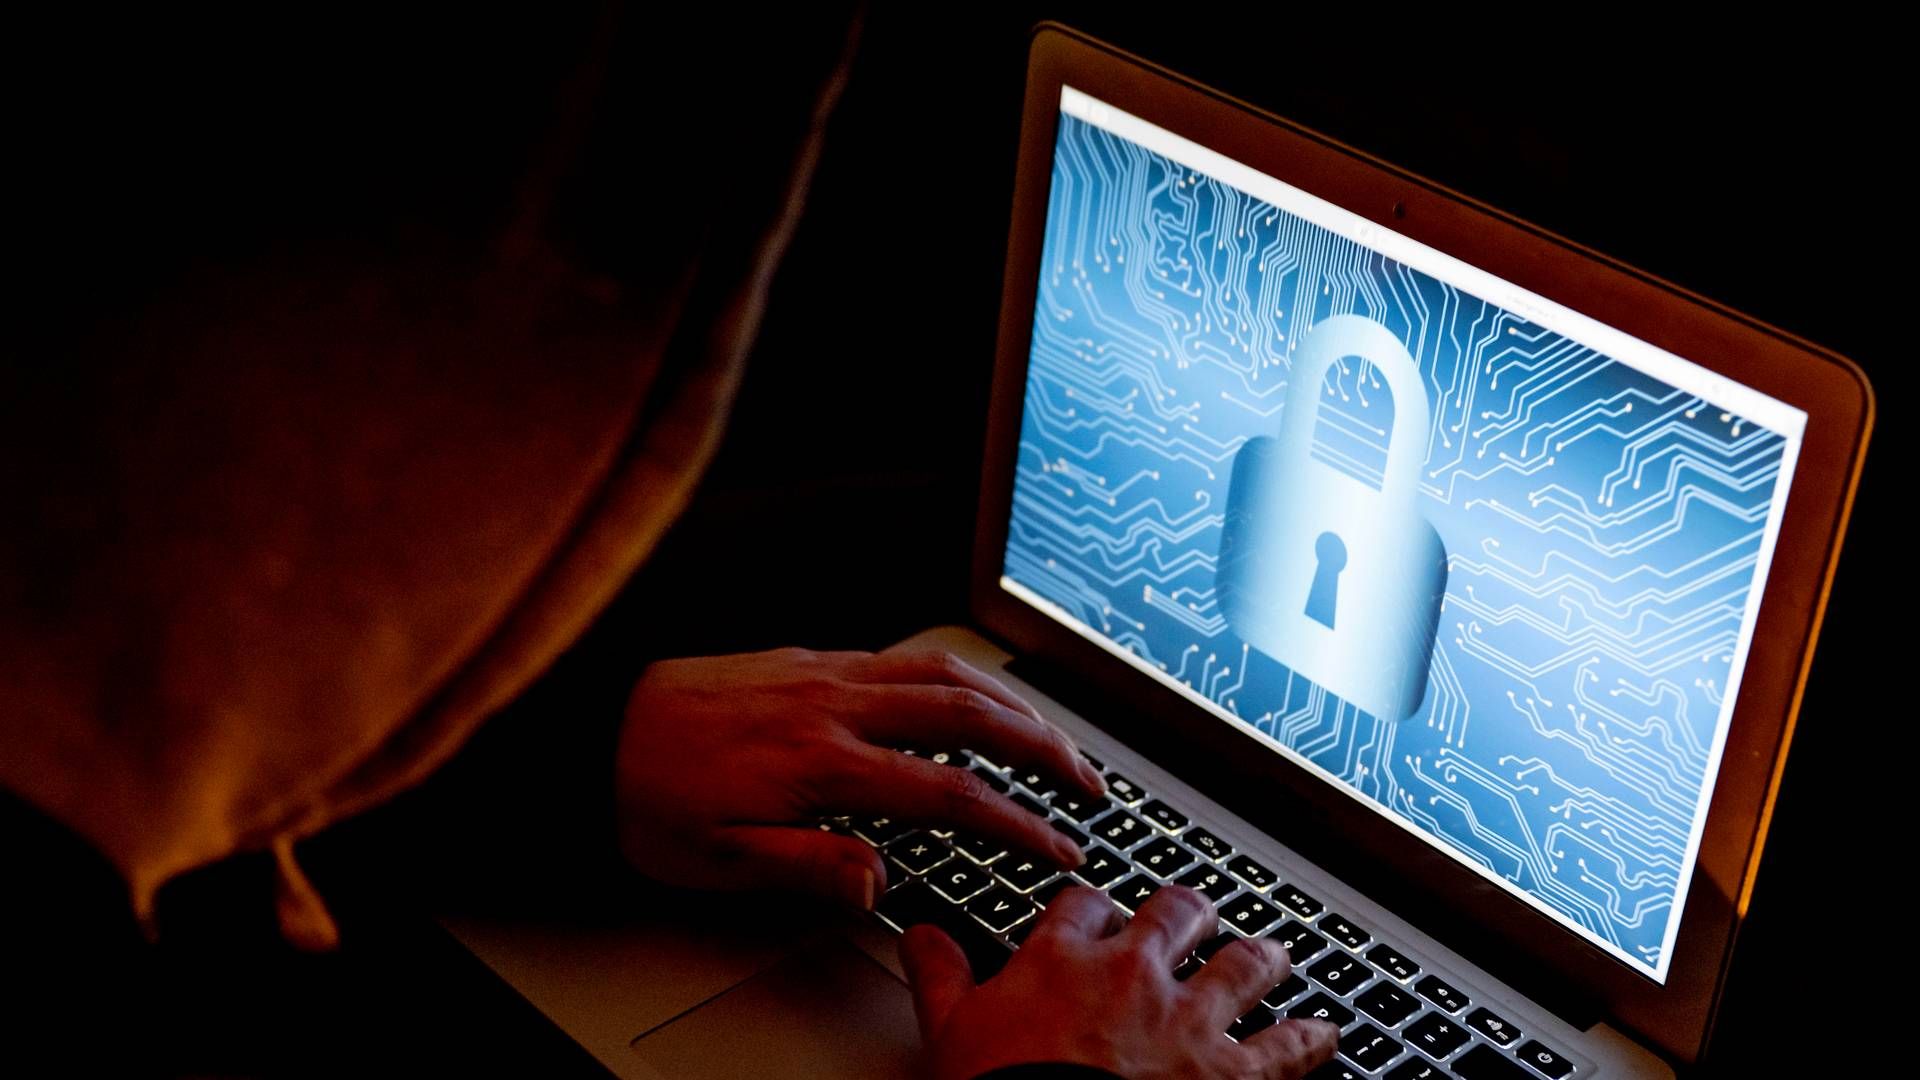 Hacker zielen eher auf Banken, nicht auf Cloud-Anbieter. | Foto: picture alliance / ROBIN UTRECHT | ROBIN UTRECHT